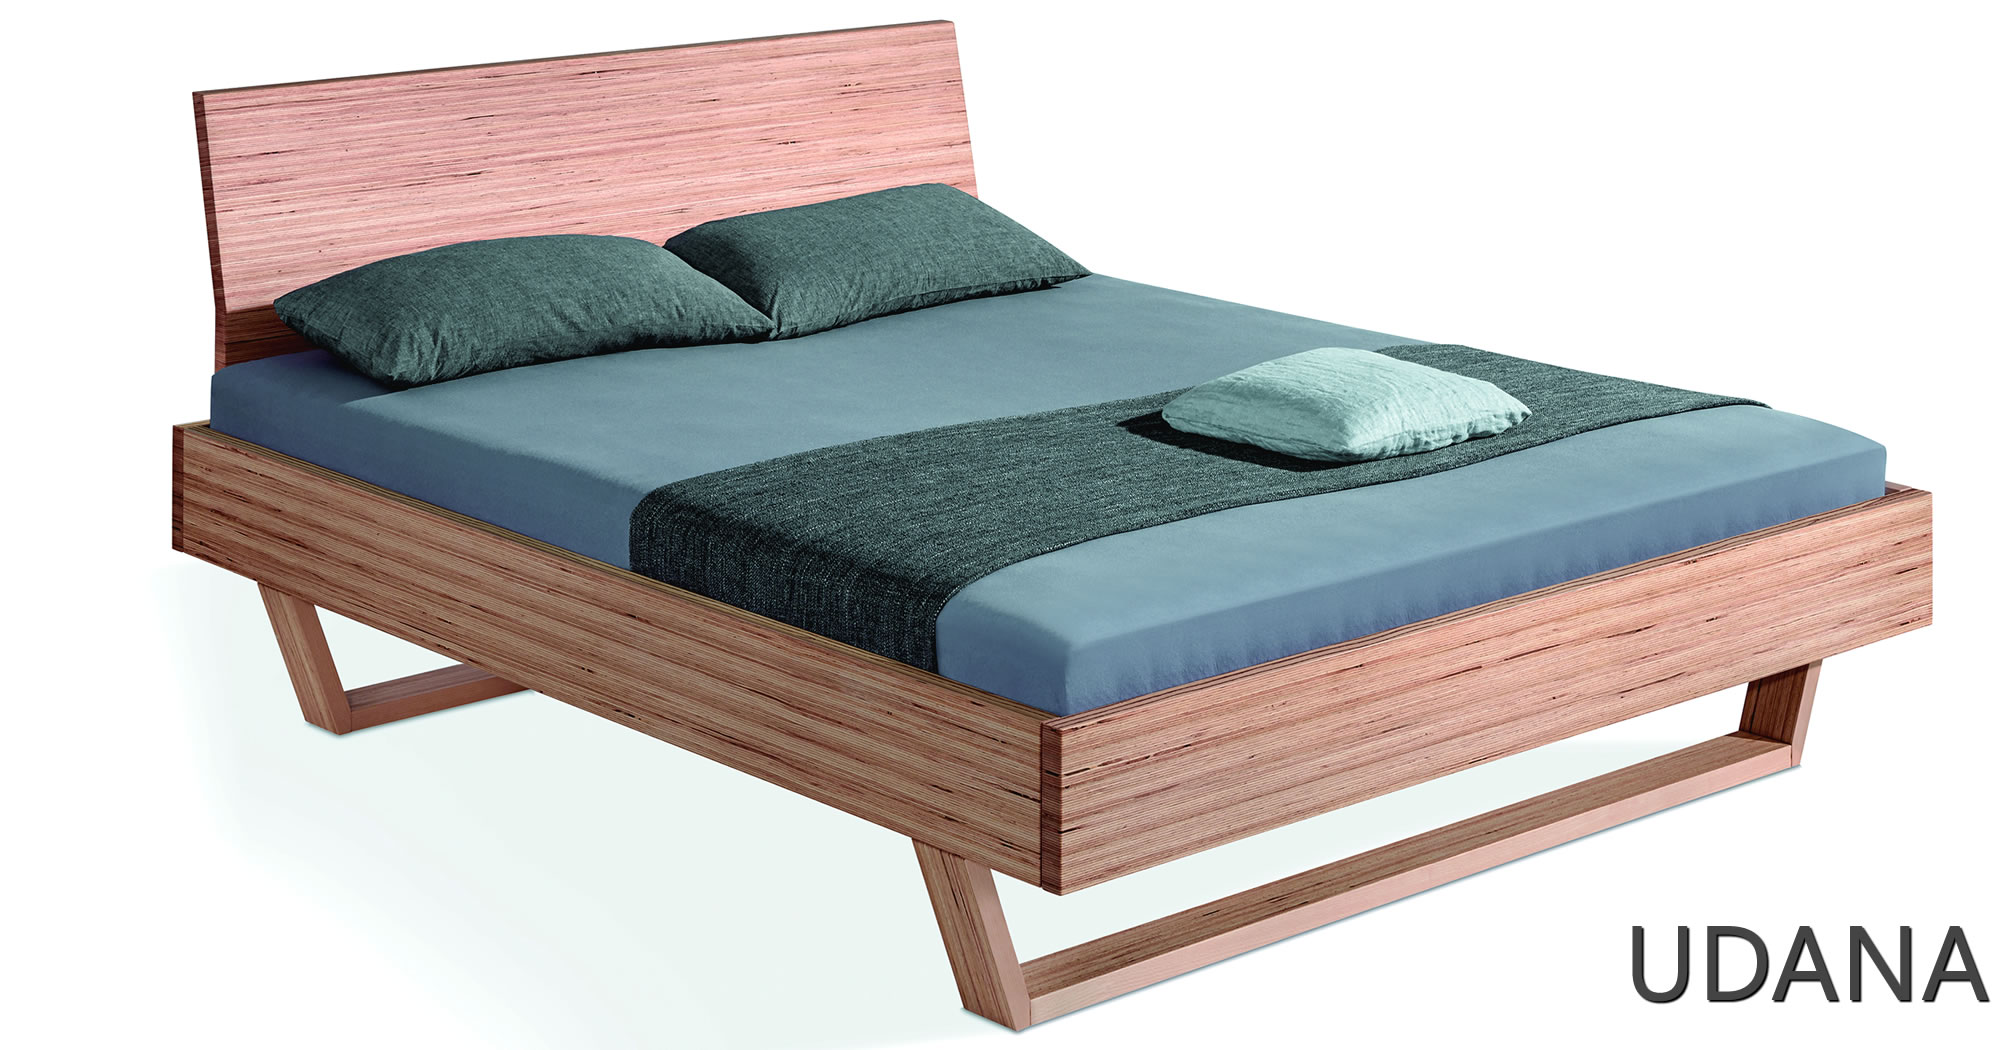 Udana Bett aus Massivholz von Dormiente